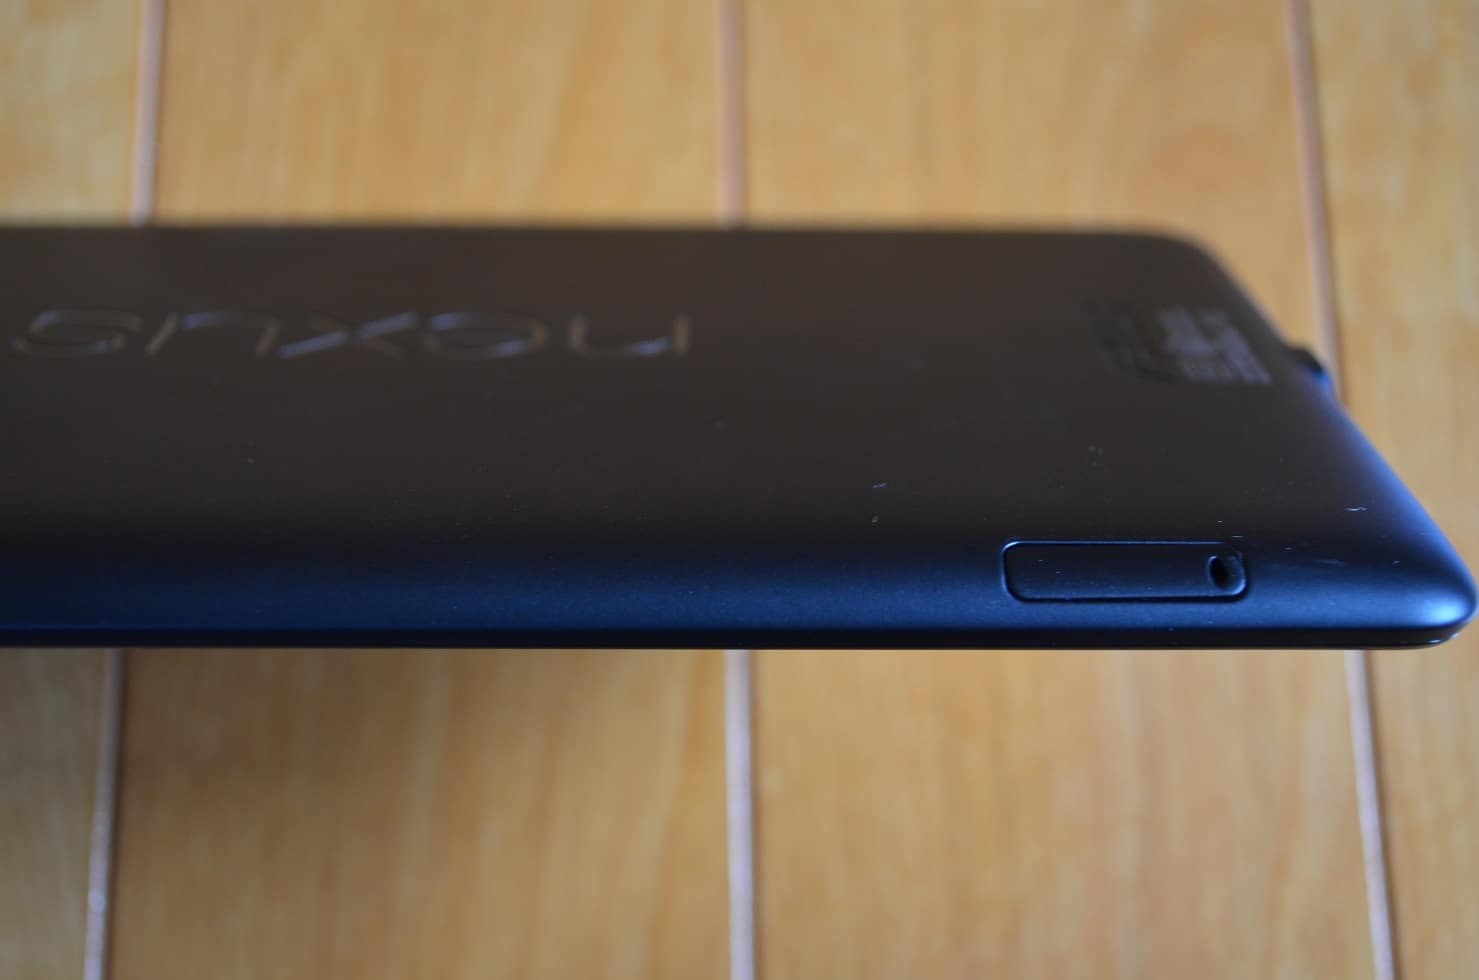 Nexus7(2013) LTE SIMフリーモデル購入レビュー。 - アンドロイドラバー